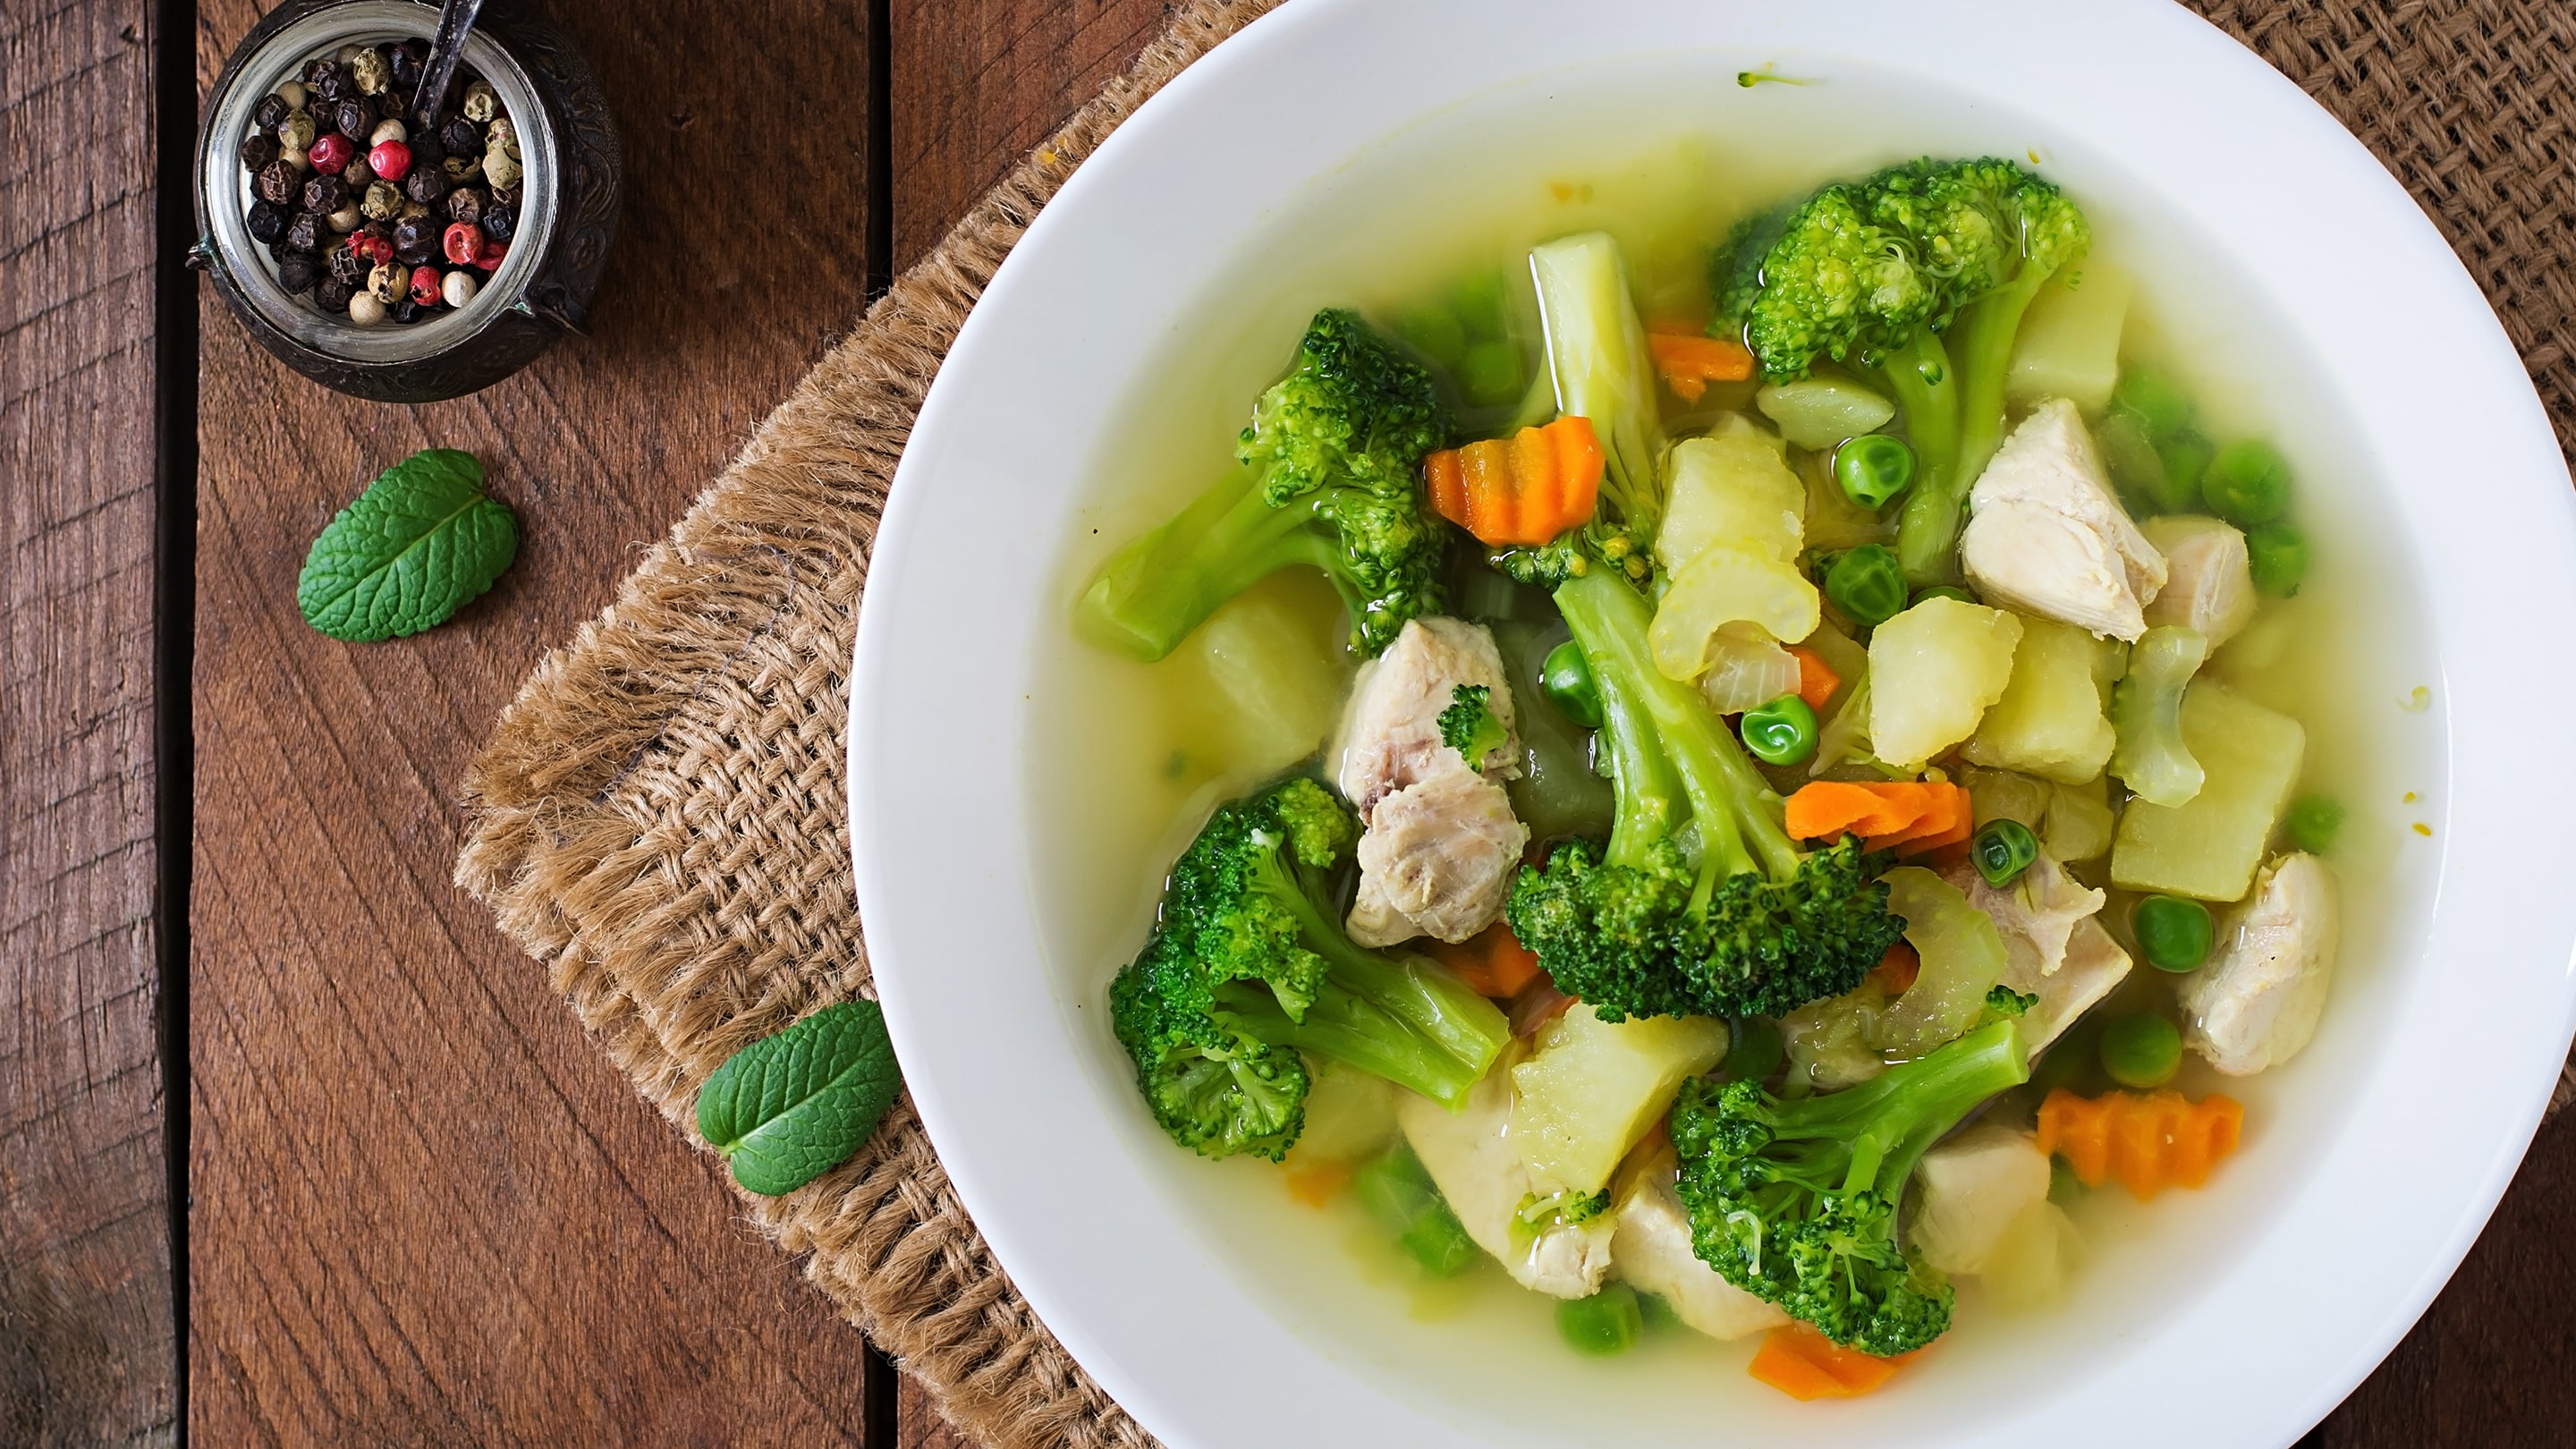 Những đồ ăn mát gan - Canh bông cải xanh nấu mọc